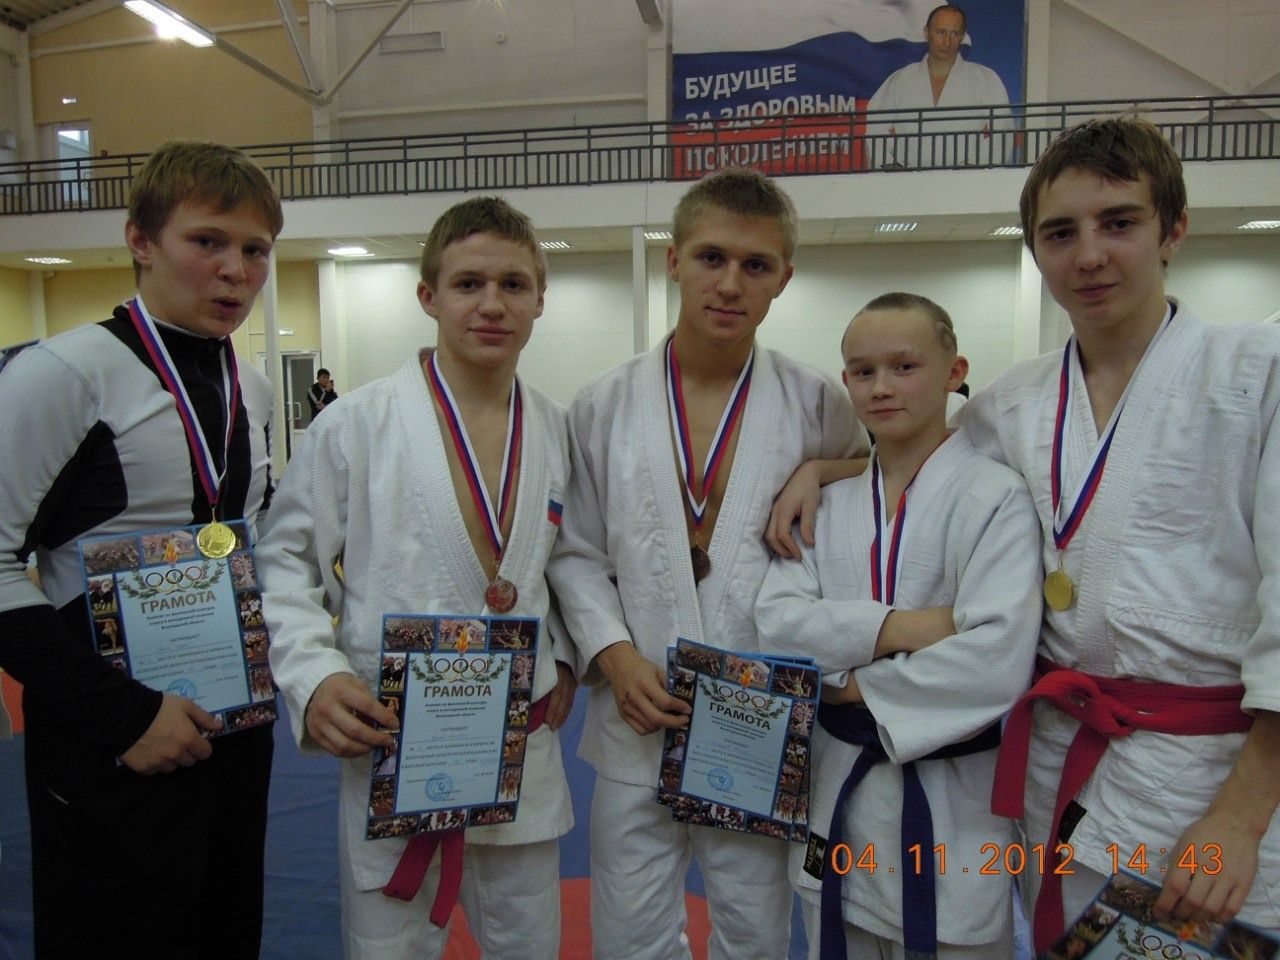 RuFire(крайний справа) на соревнованиях по рукопашному бою